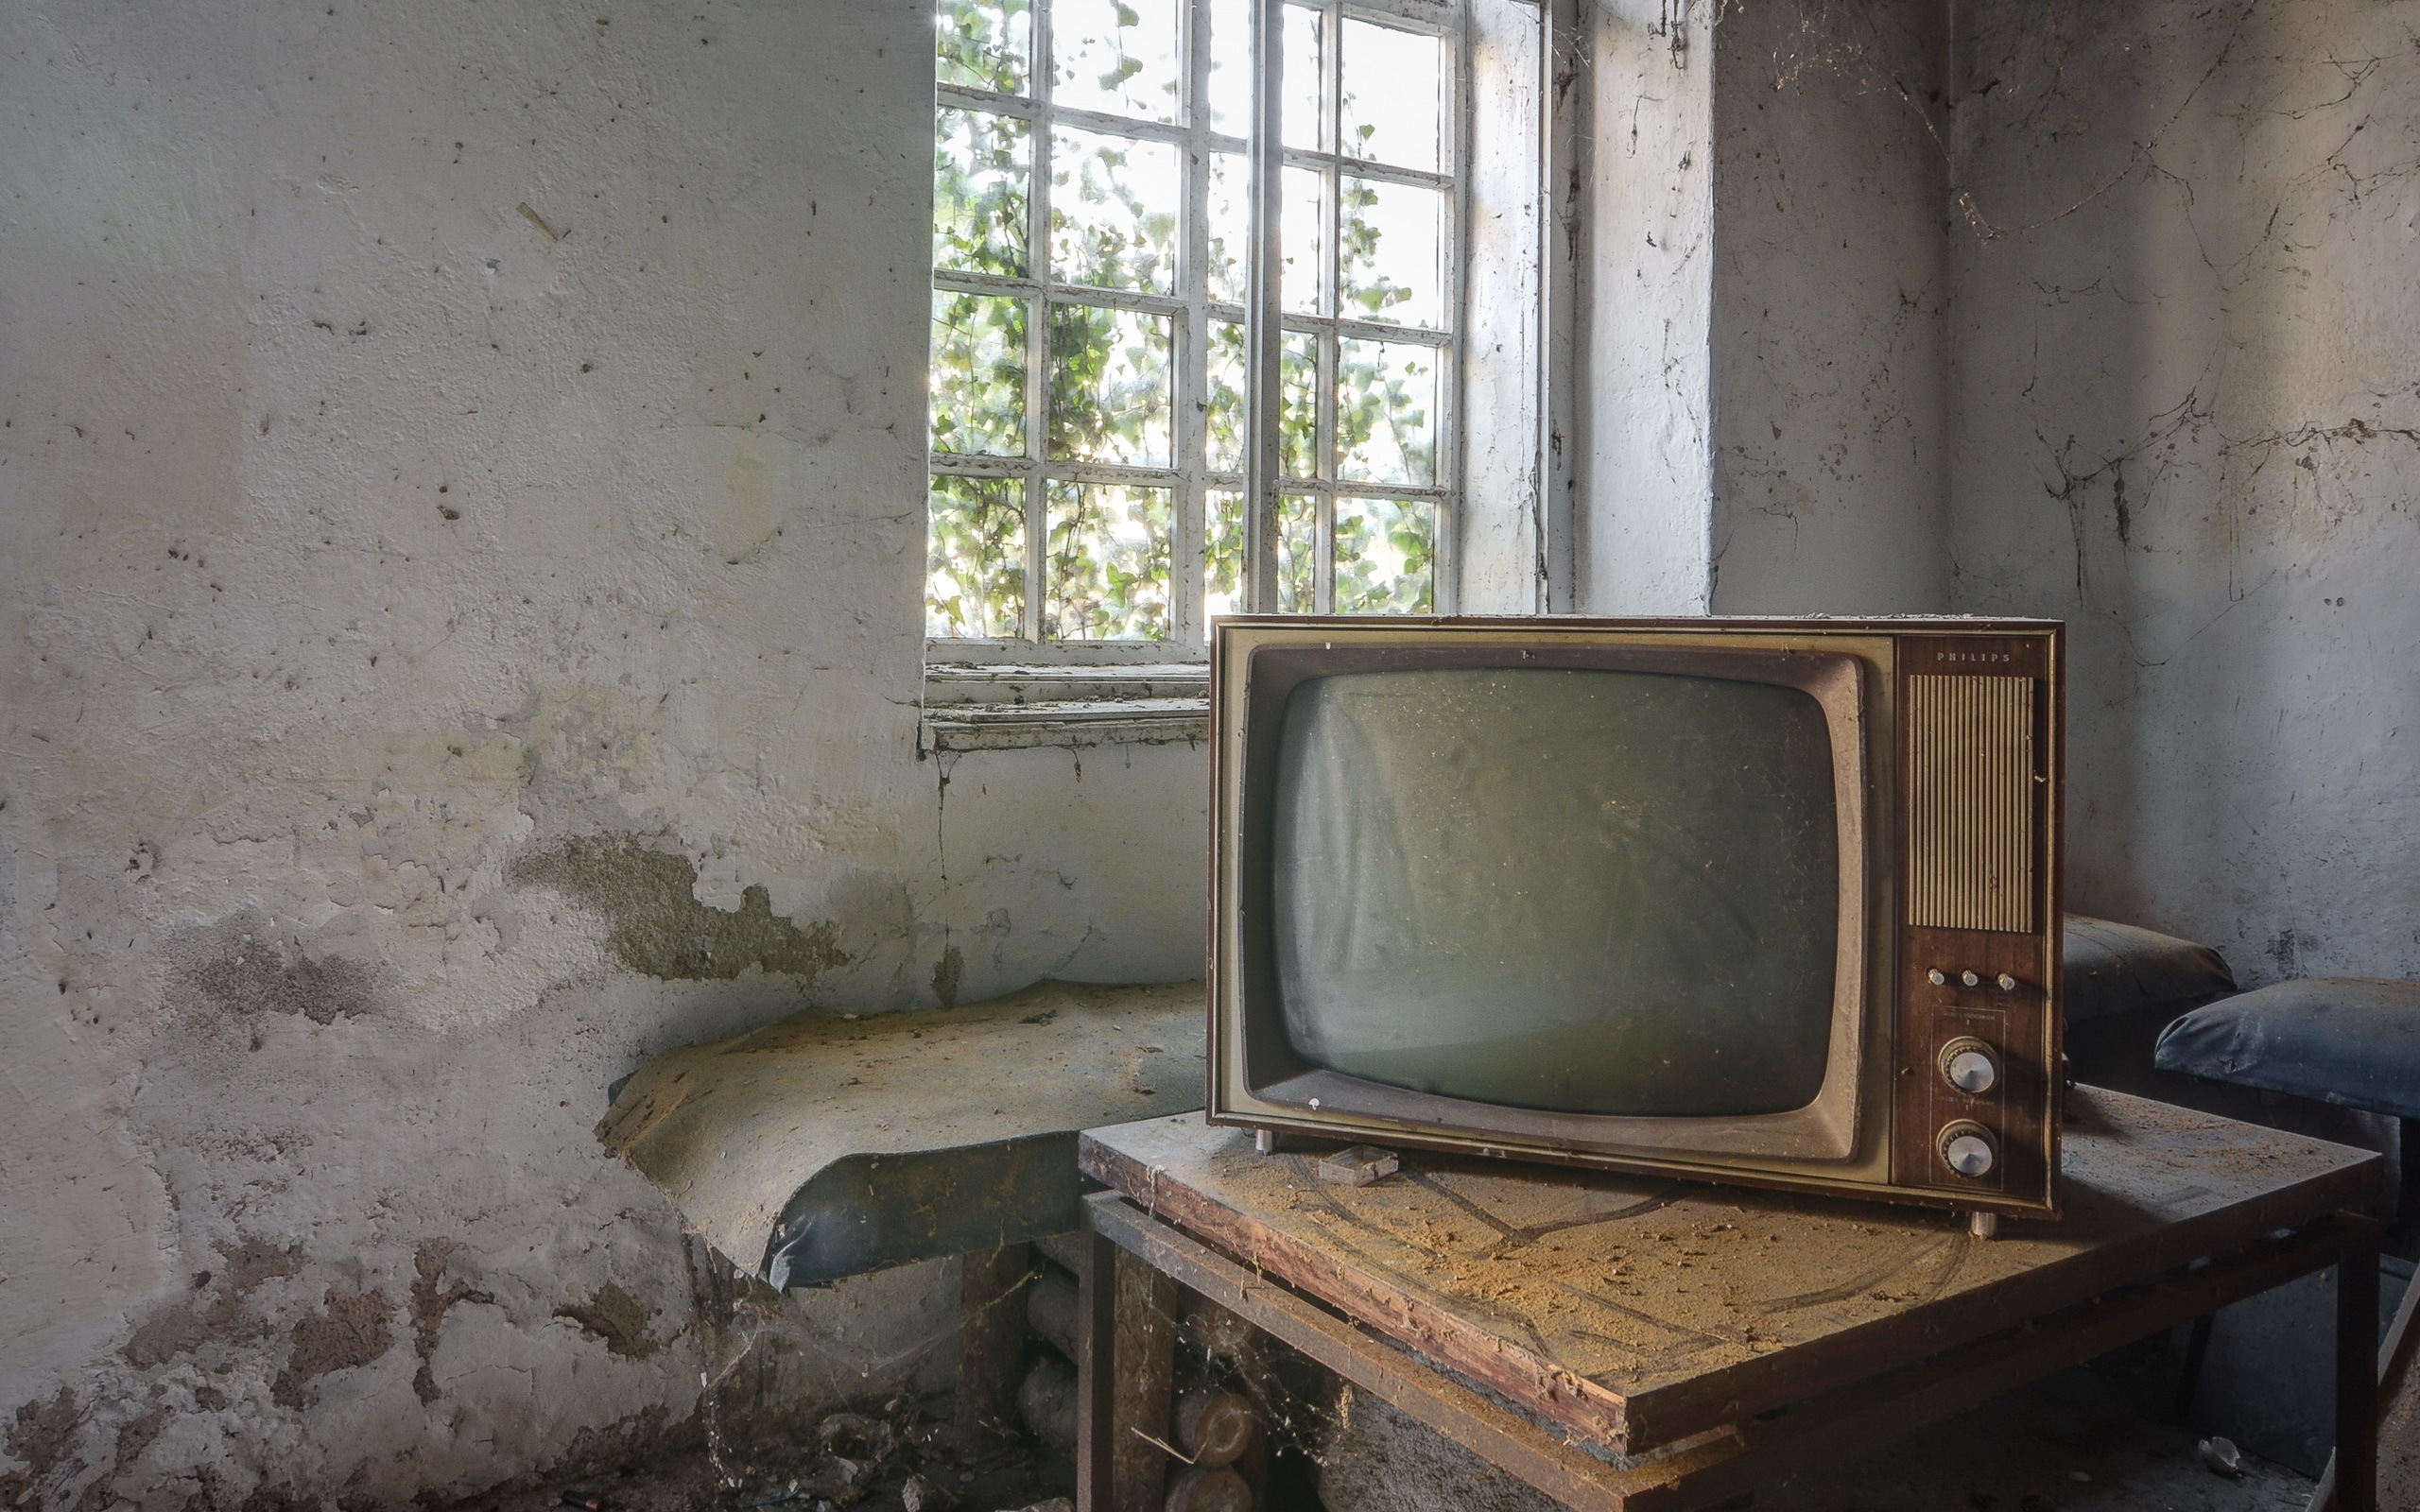 Кинопоиск на старом телевизоре. Старый телевизор. Старый телевизор в комнате. Телевизор старый в комтан. Советская комната с телевизором.